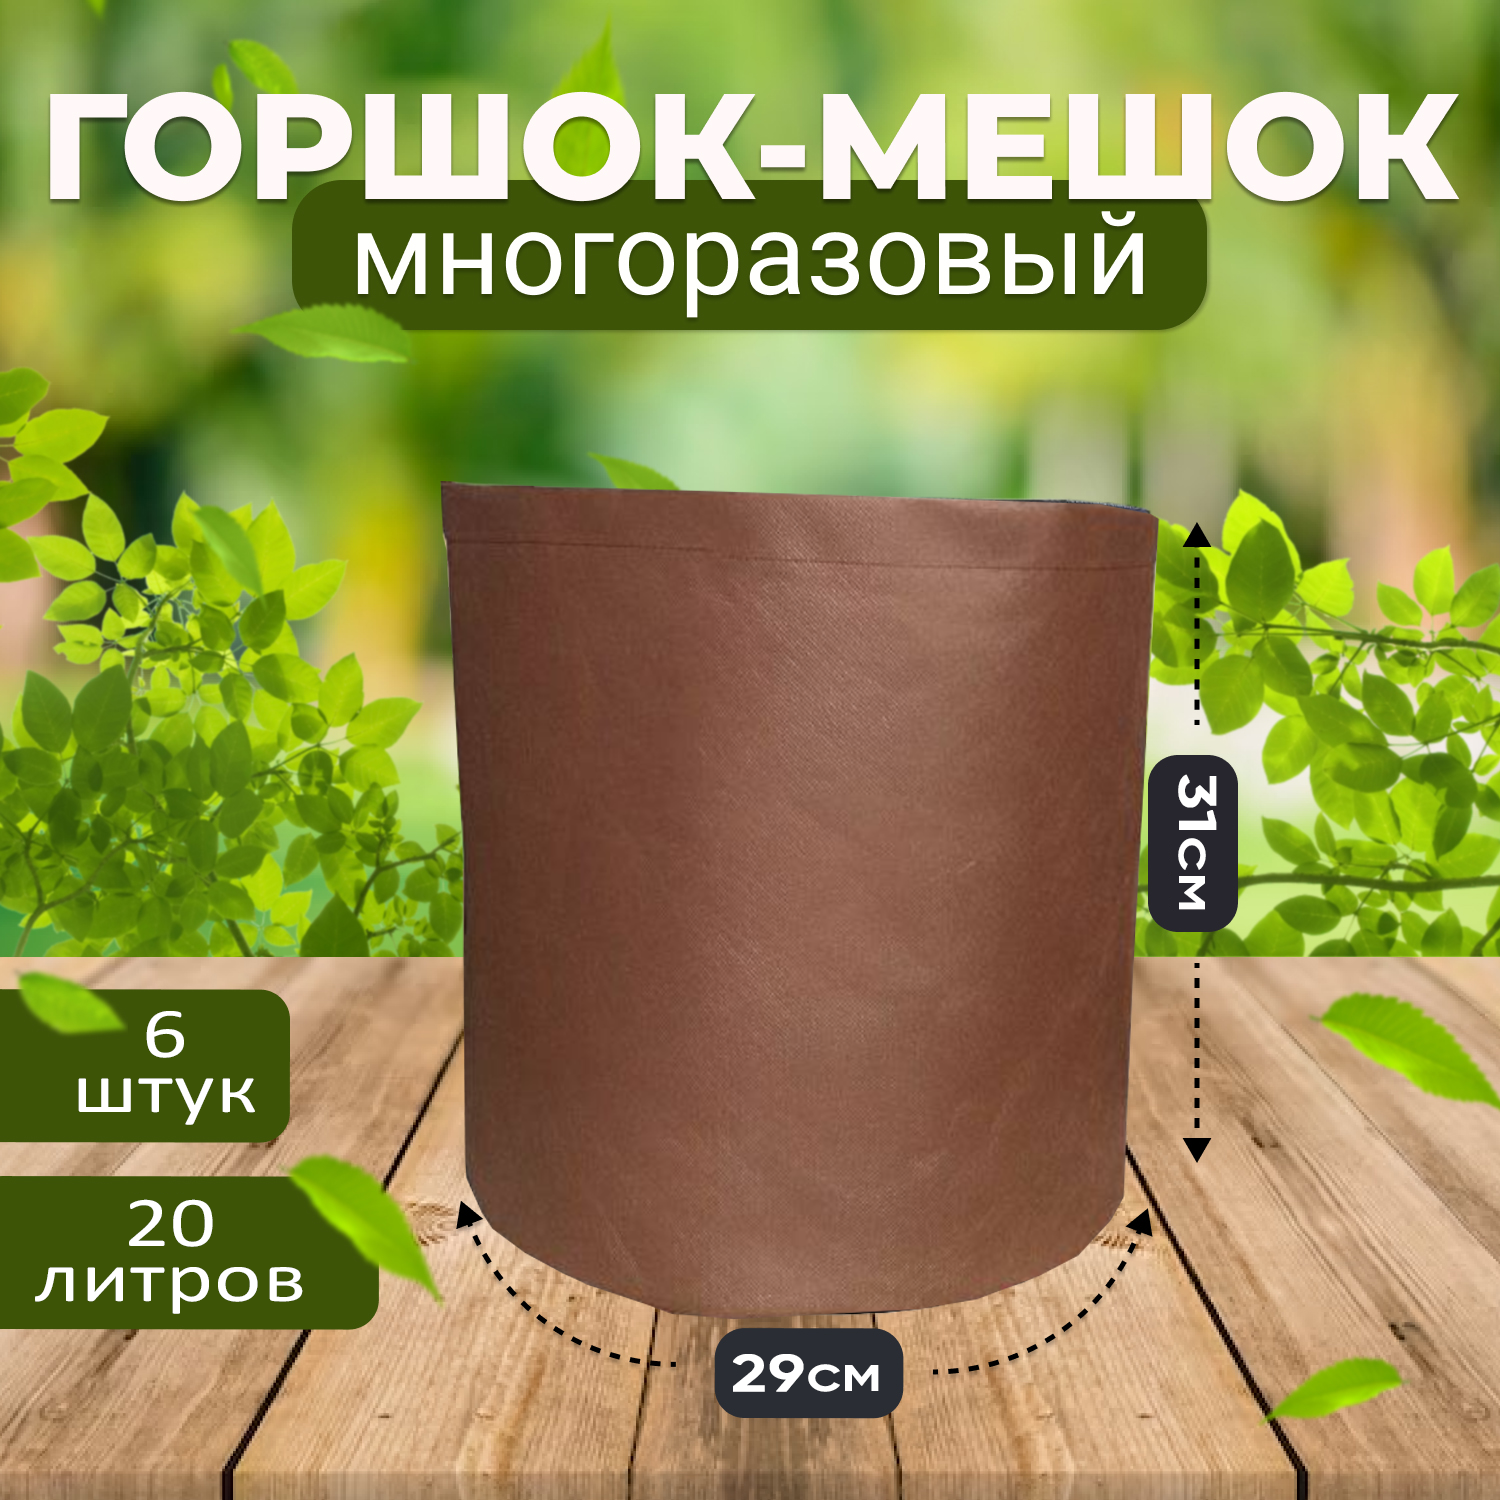 Мешок горшок текстильный из спанбонда Grower Green 20_litrov-Brown_6 20 литров, 6шт.